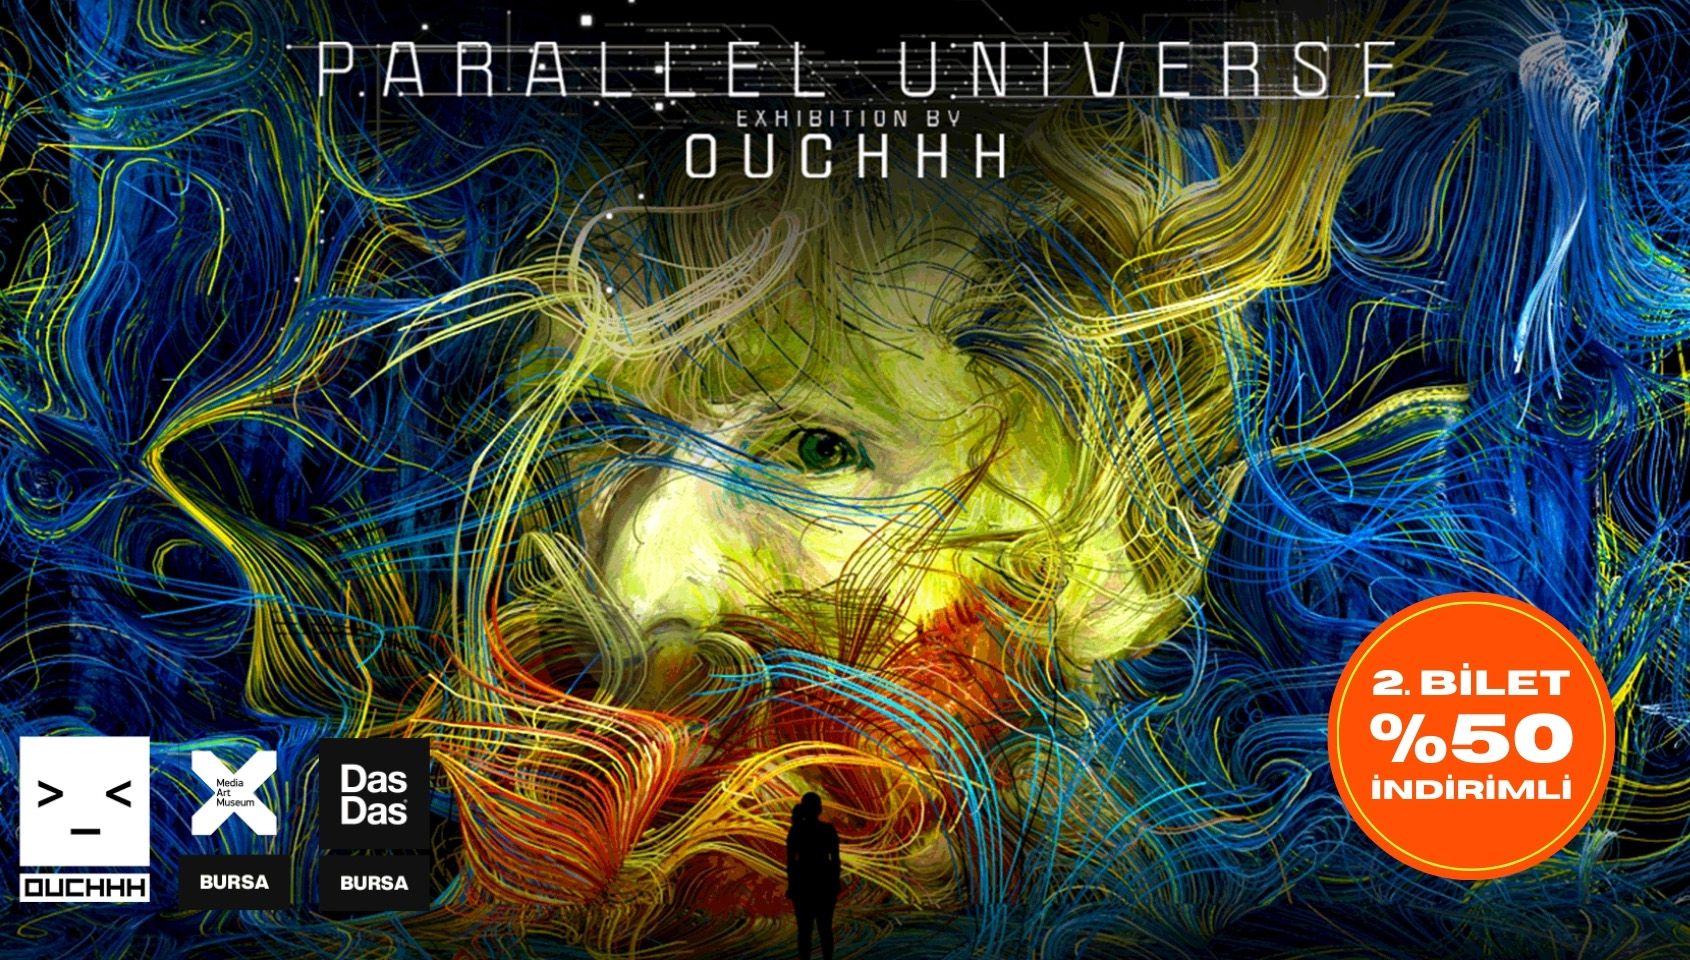 Parallel Universe Exhibition by Ouchhh - DasDas Bursa - Bursa